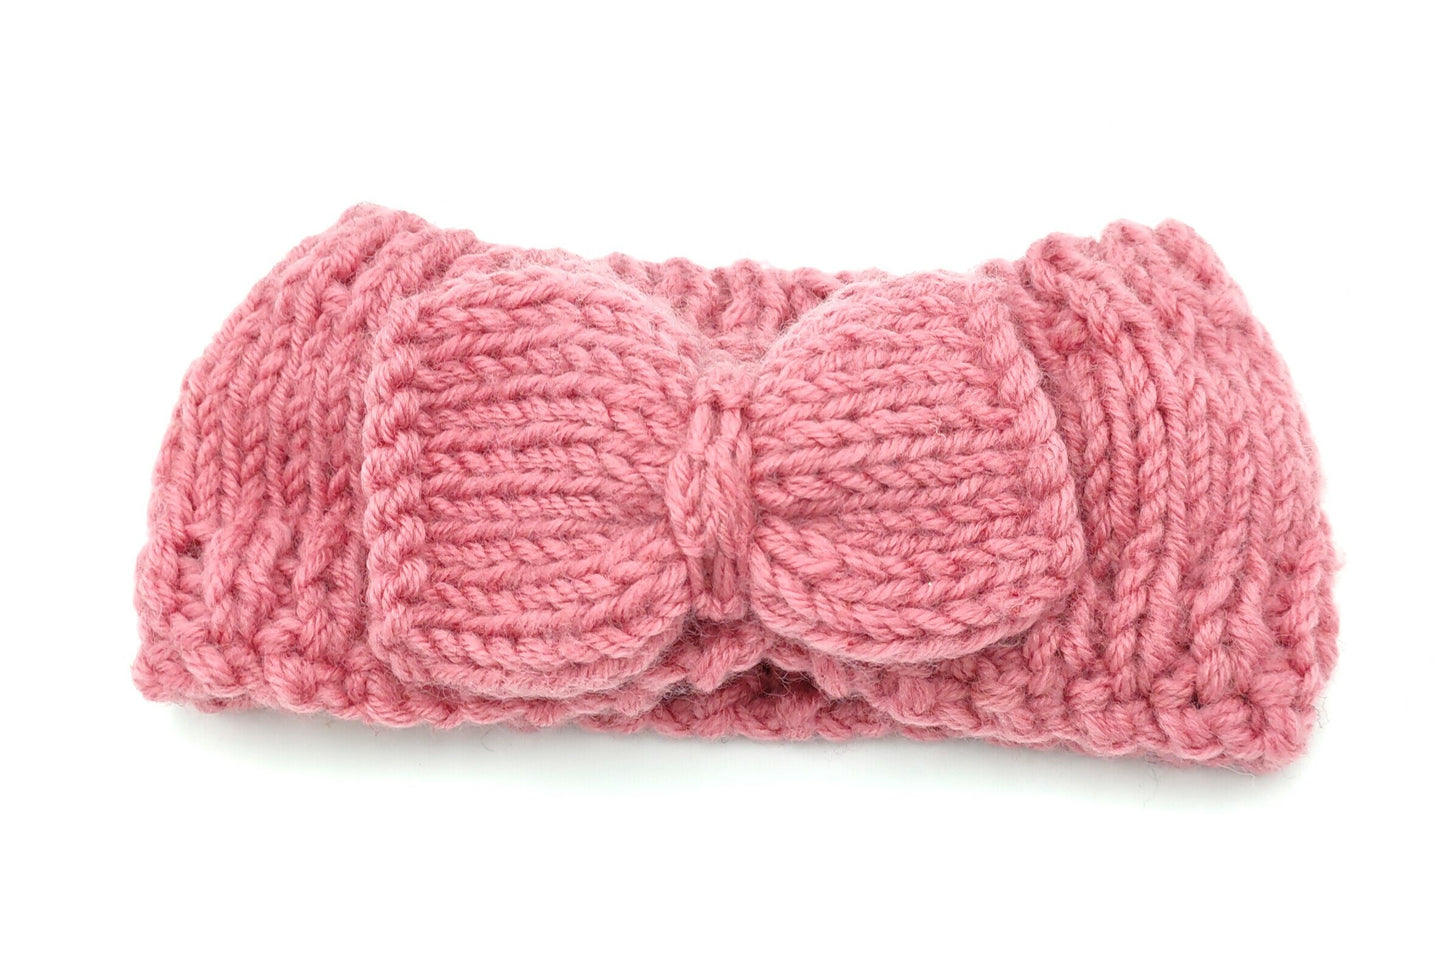 Crochet loop headband with